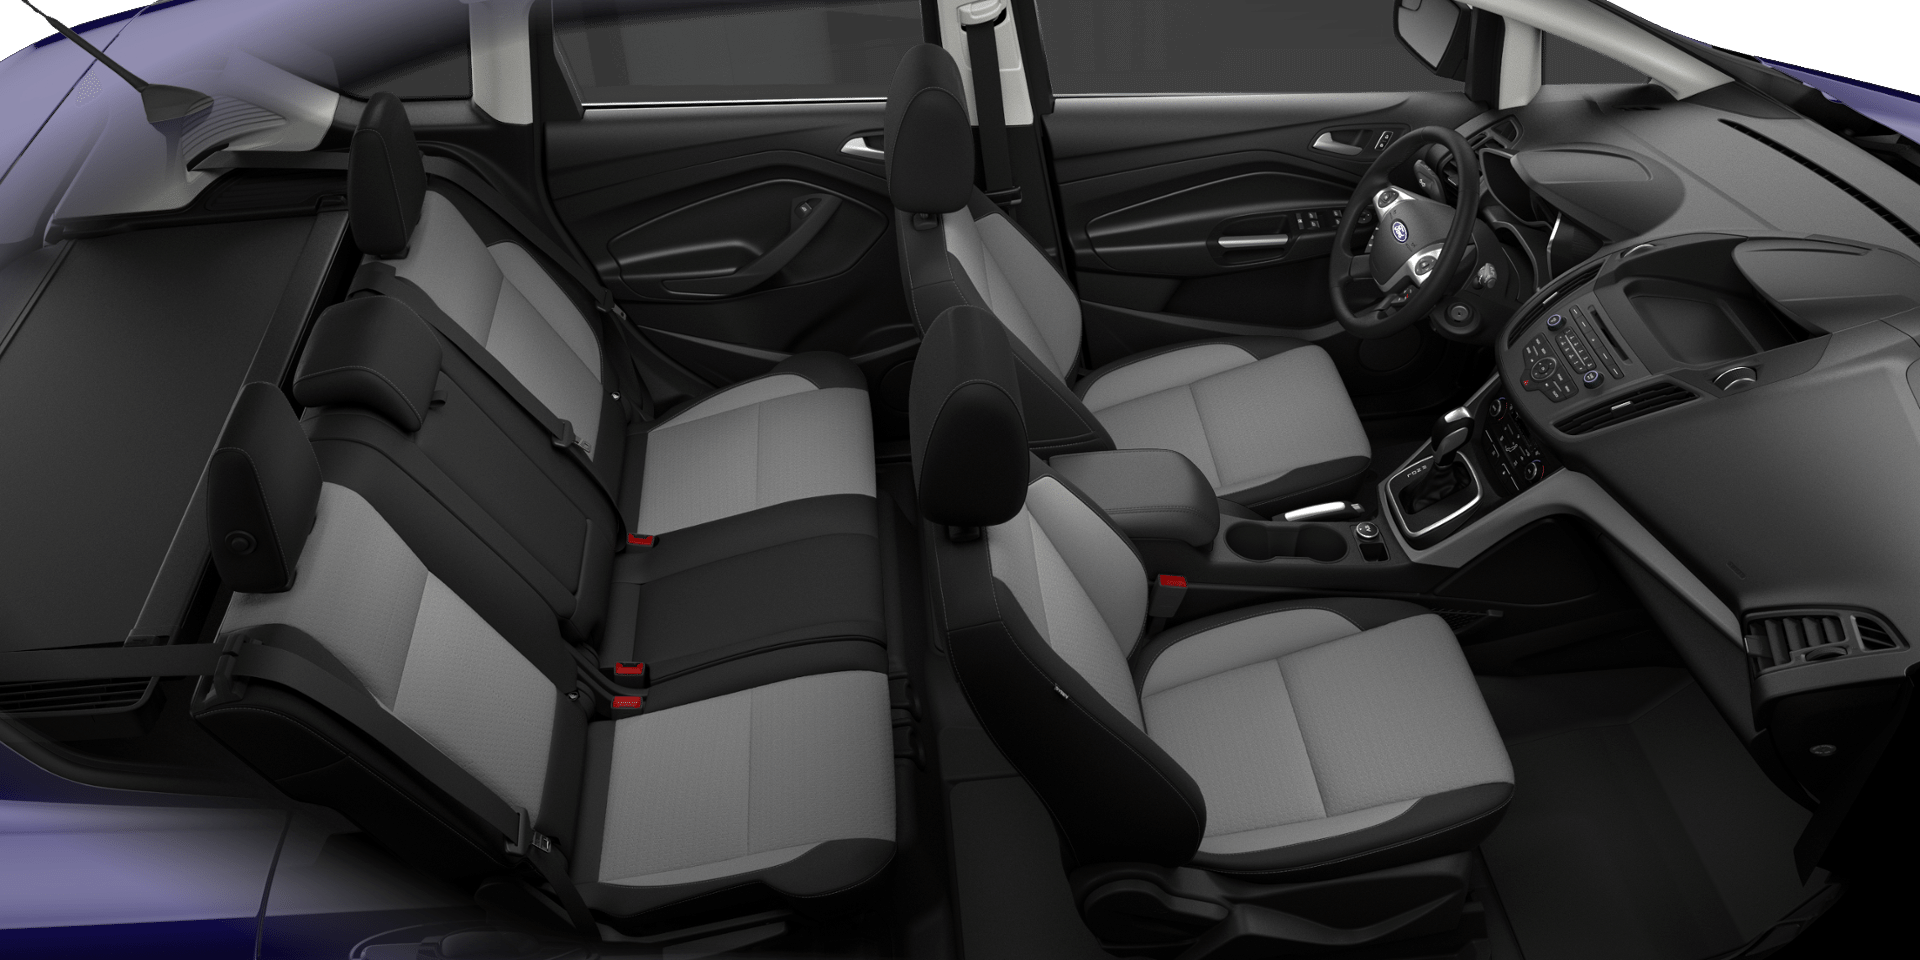 Ford C max Hybrid Titanium interior whole seat view